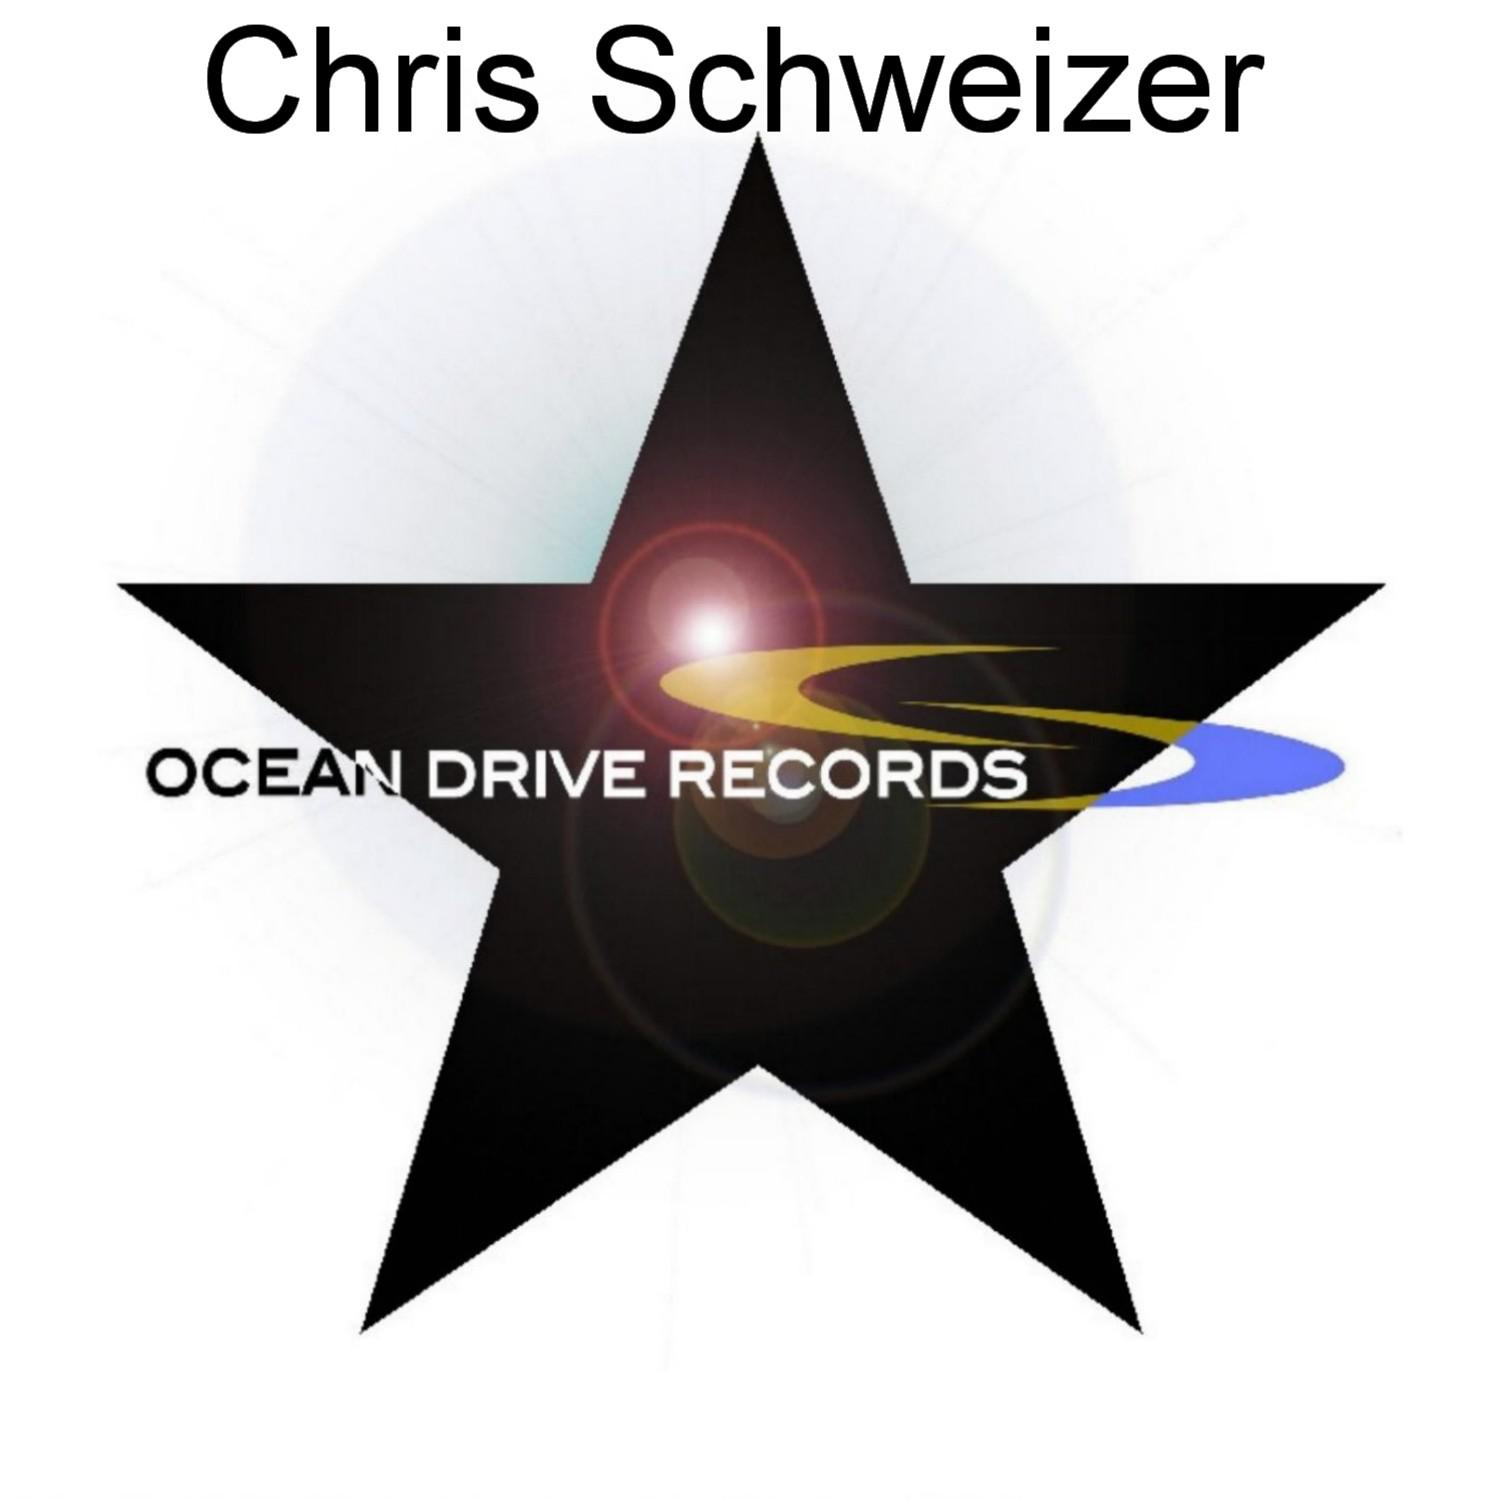 Chris Schweizer